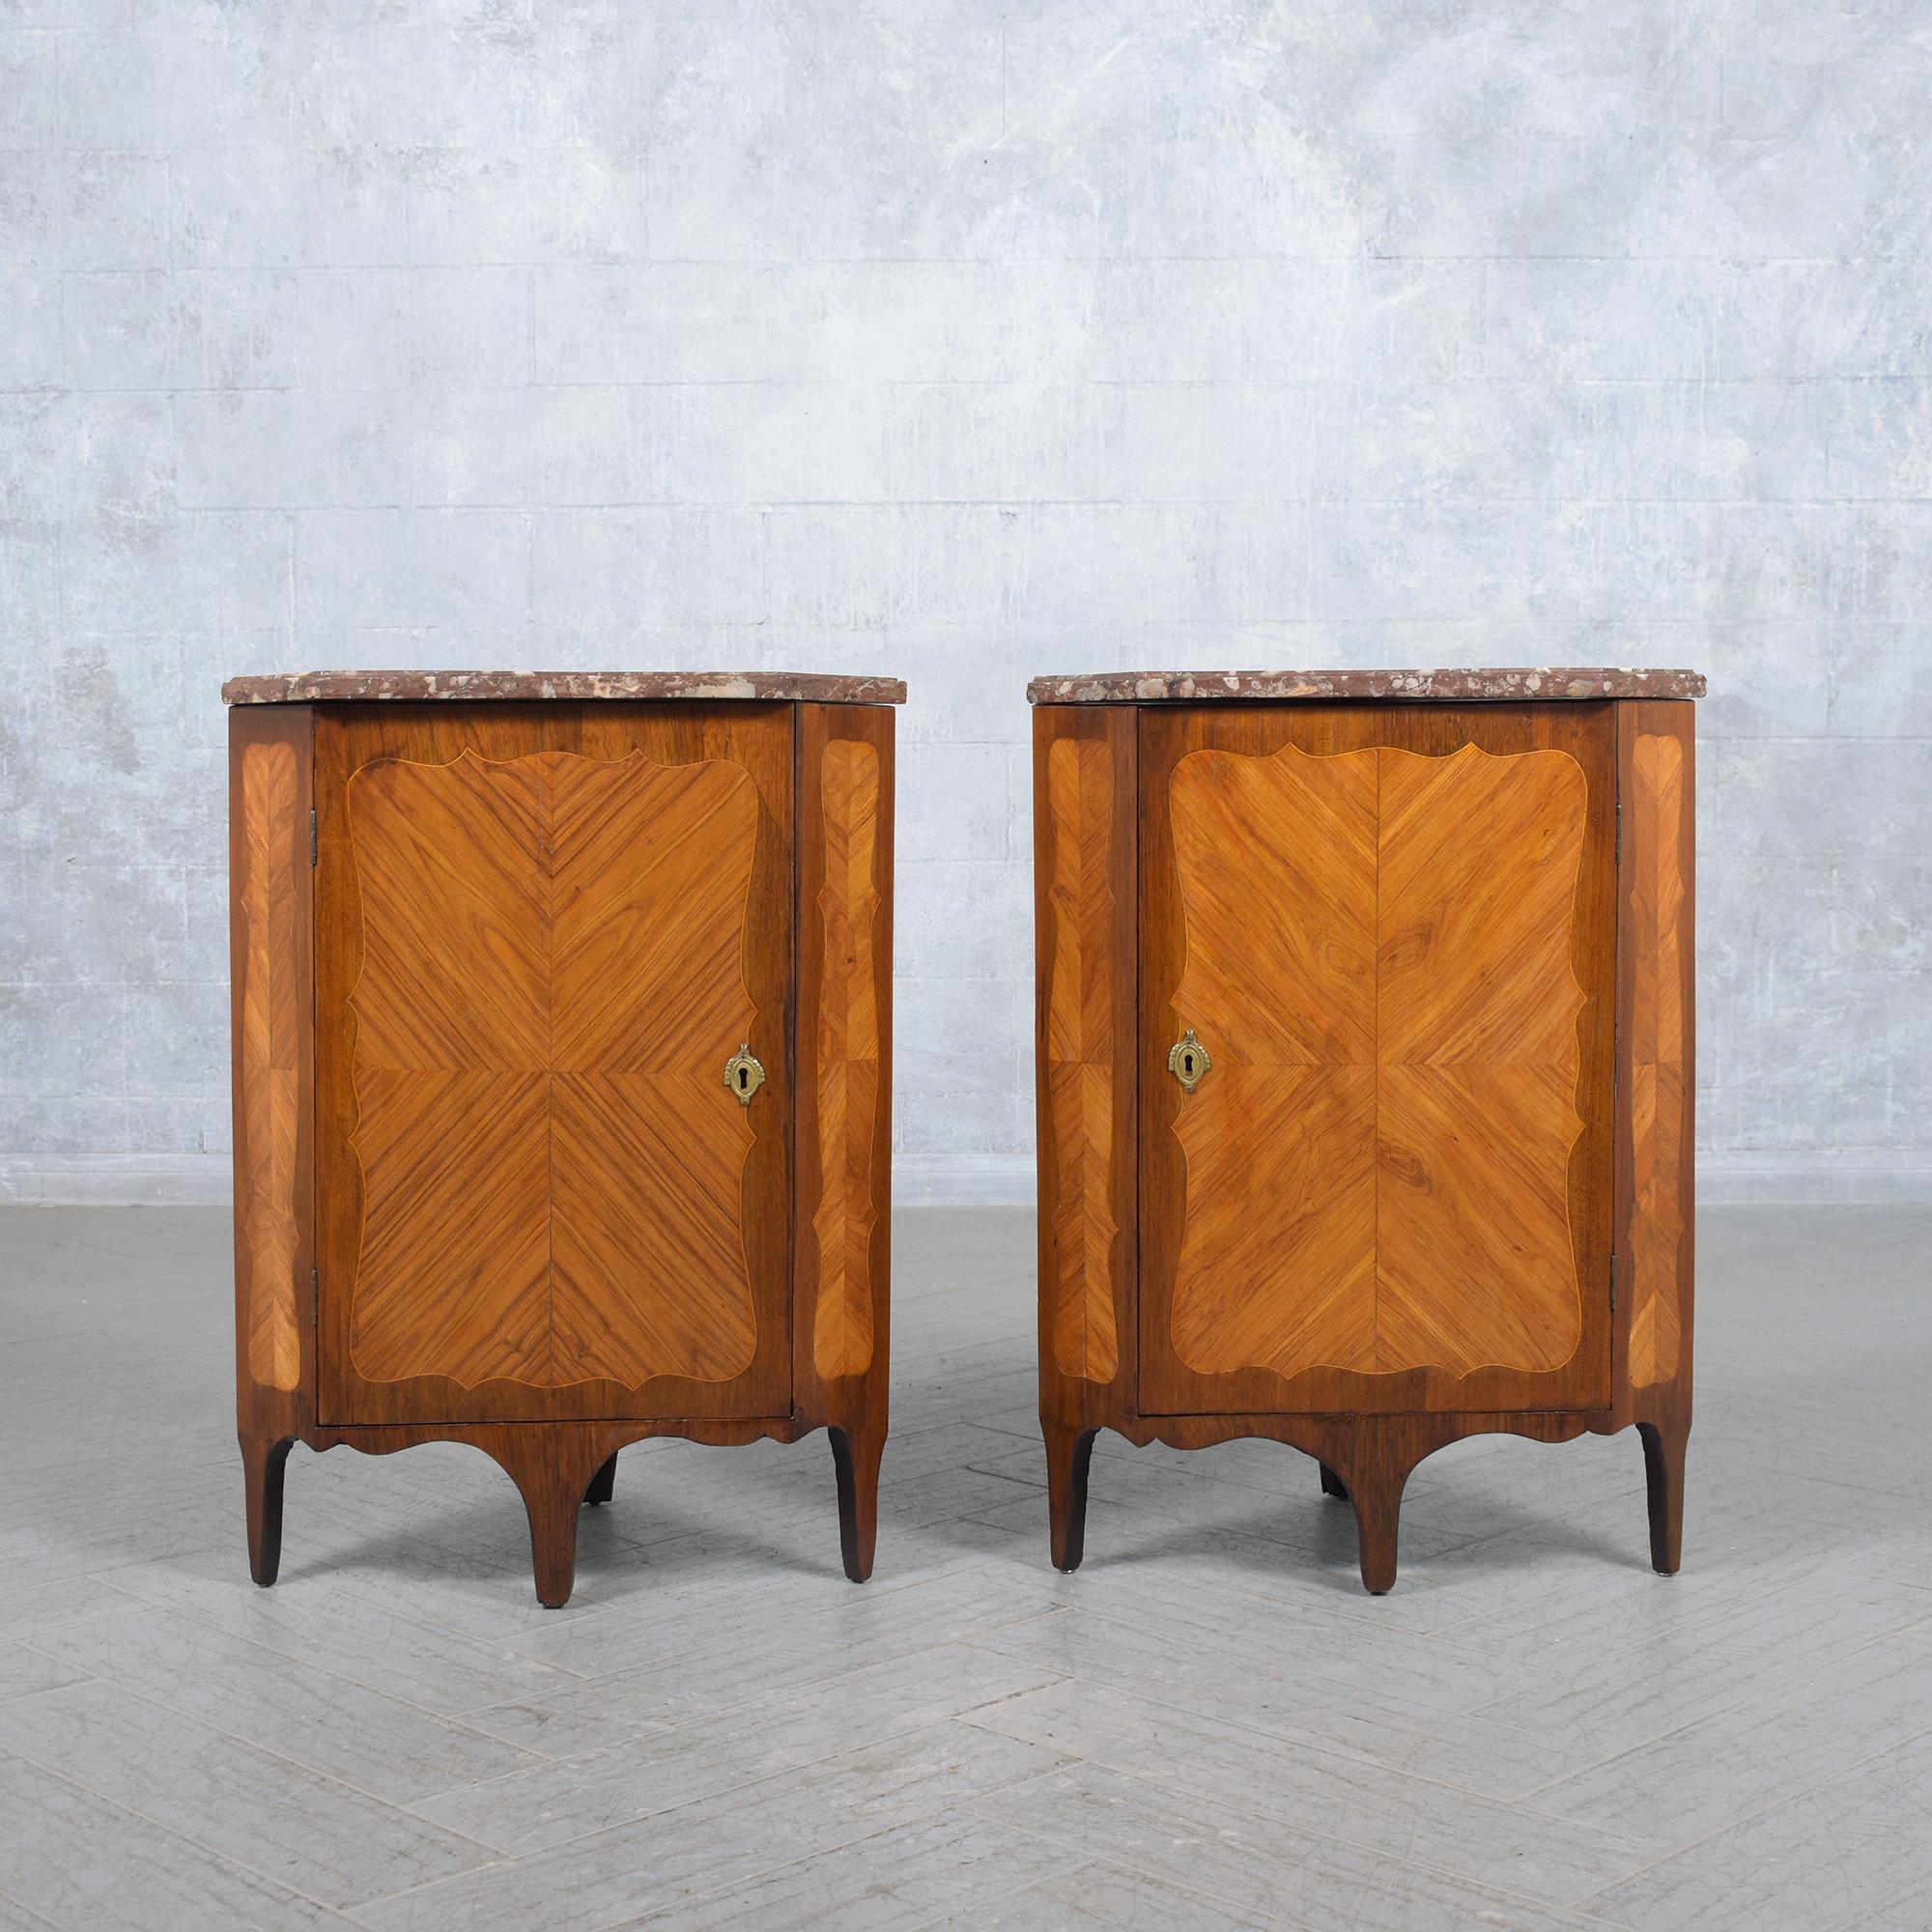 Plongez dans l'opulence de la fin du XVIIIe siècle avec notre extraordinaire paire de meubles d'angle français, témoignage d'un artisanat exquis et d'un design intemporel. Fabriquée de main de maître à partir de bois et de placages de bois fruitier